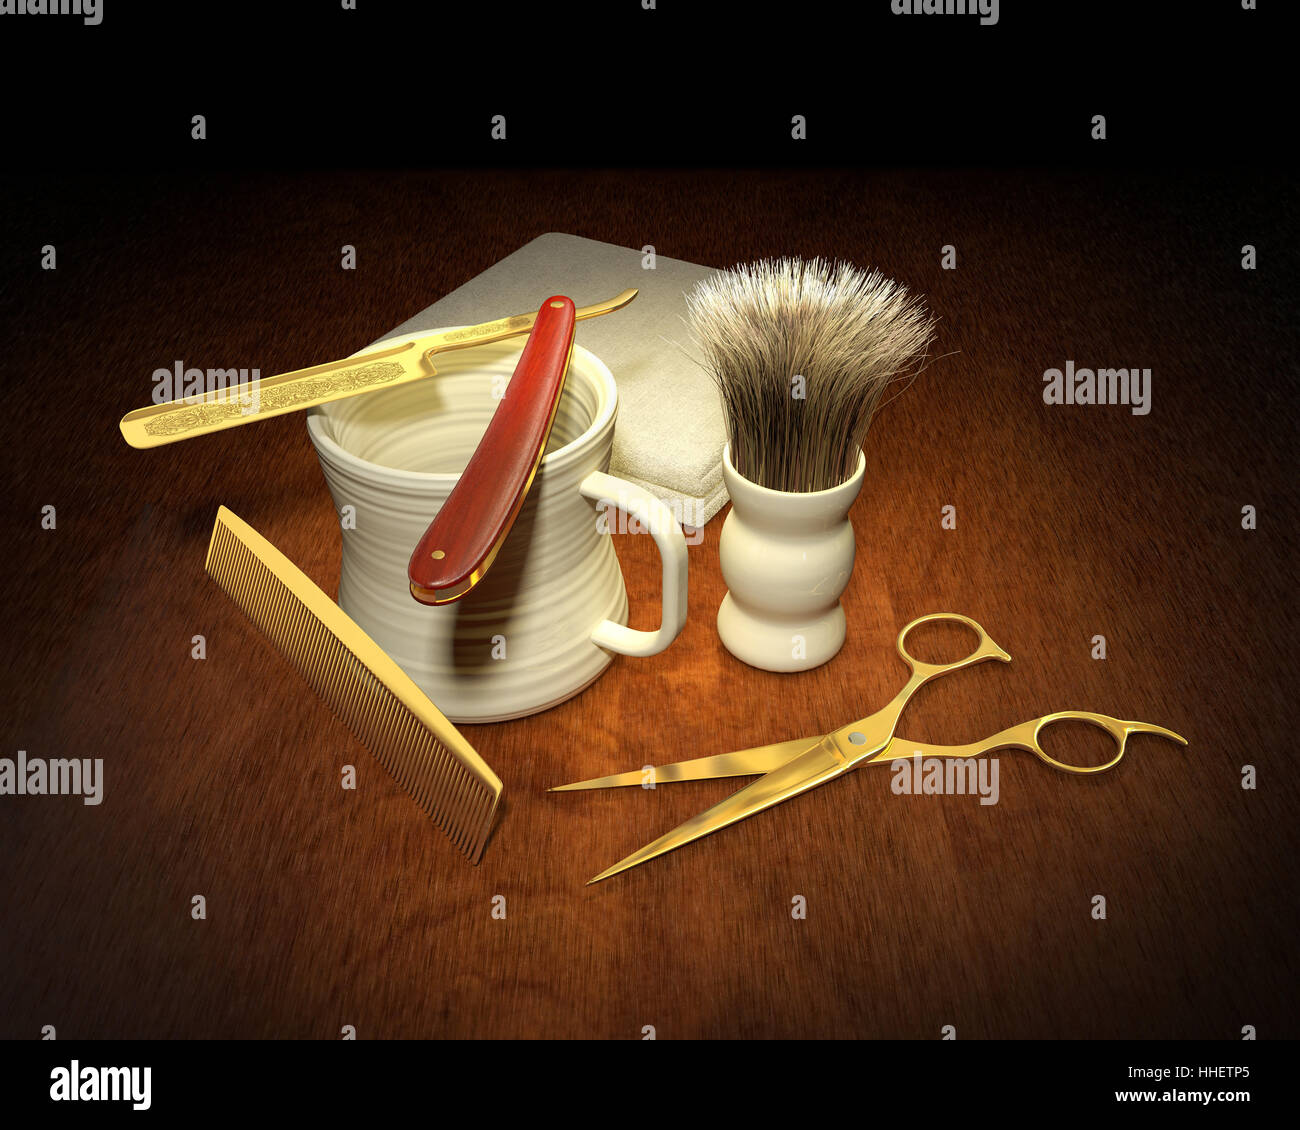 scissors, scissor, retro, comb, shaving, combing, antique, vintage, scissors, Stock Photo